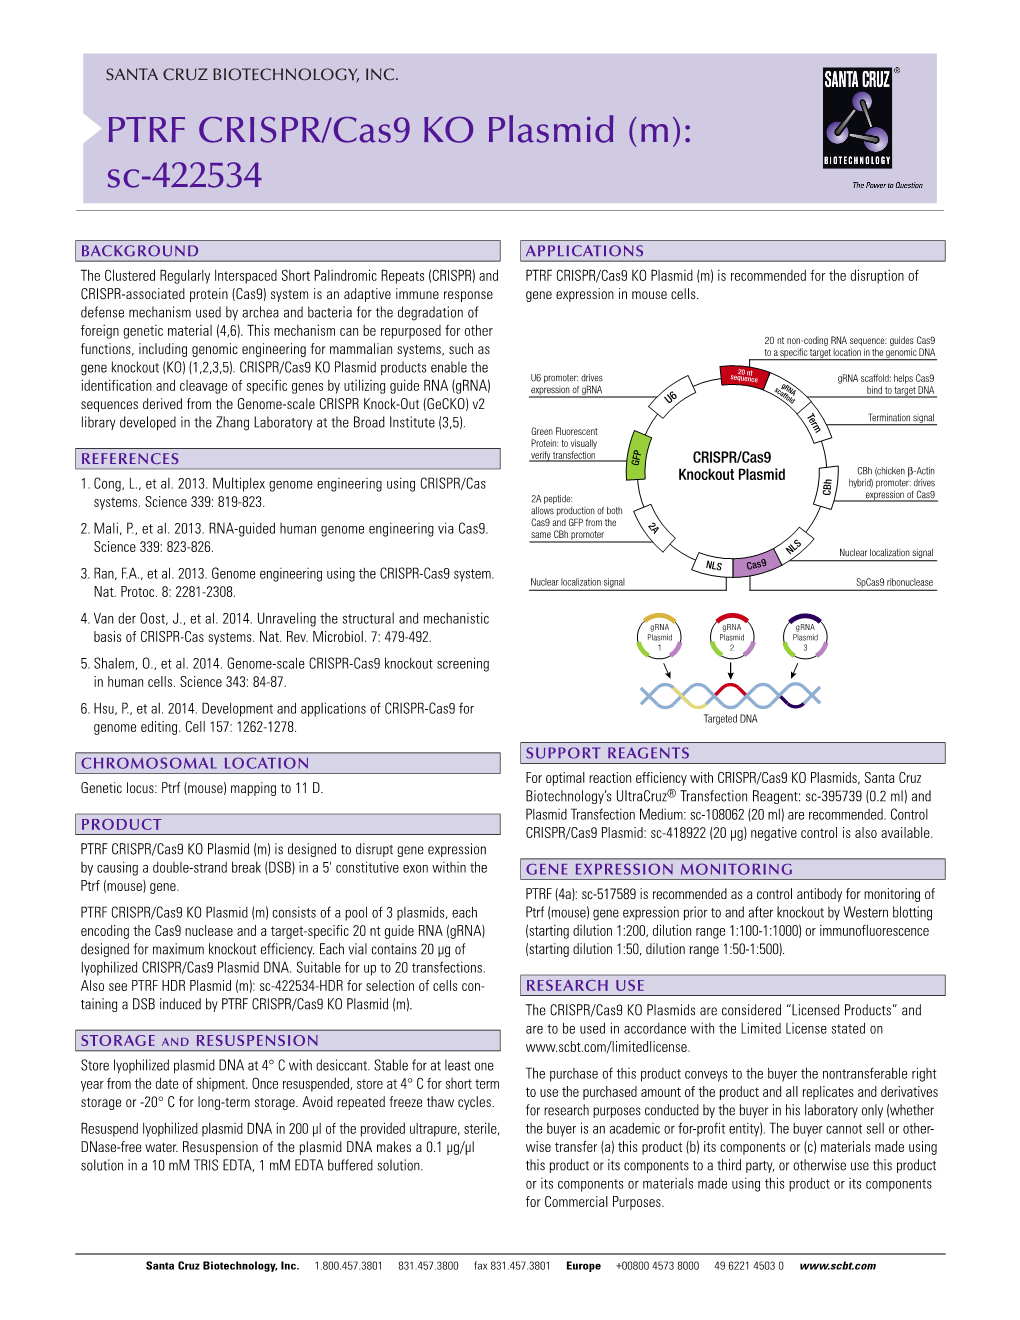 PTRF CRISPR/Cas9 KO Plasmid (M): Sc-422534